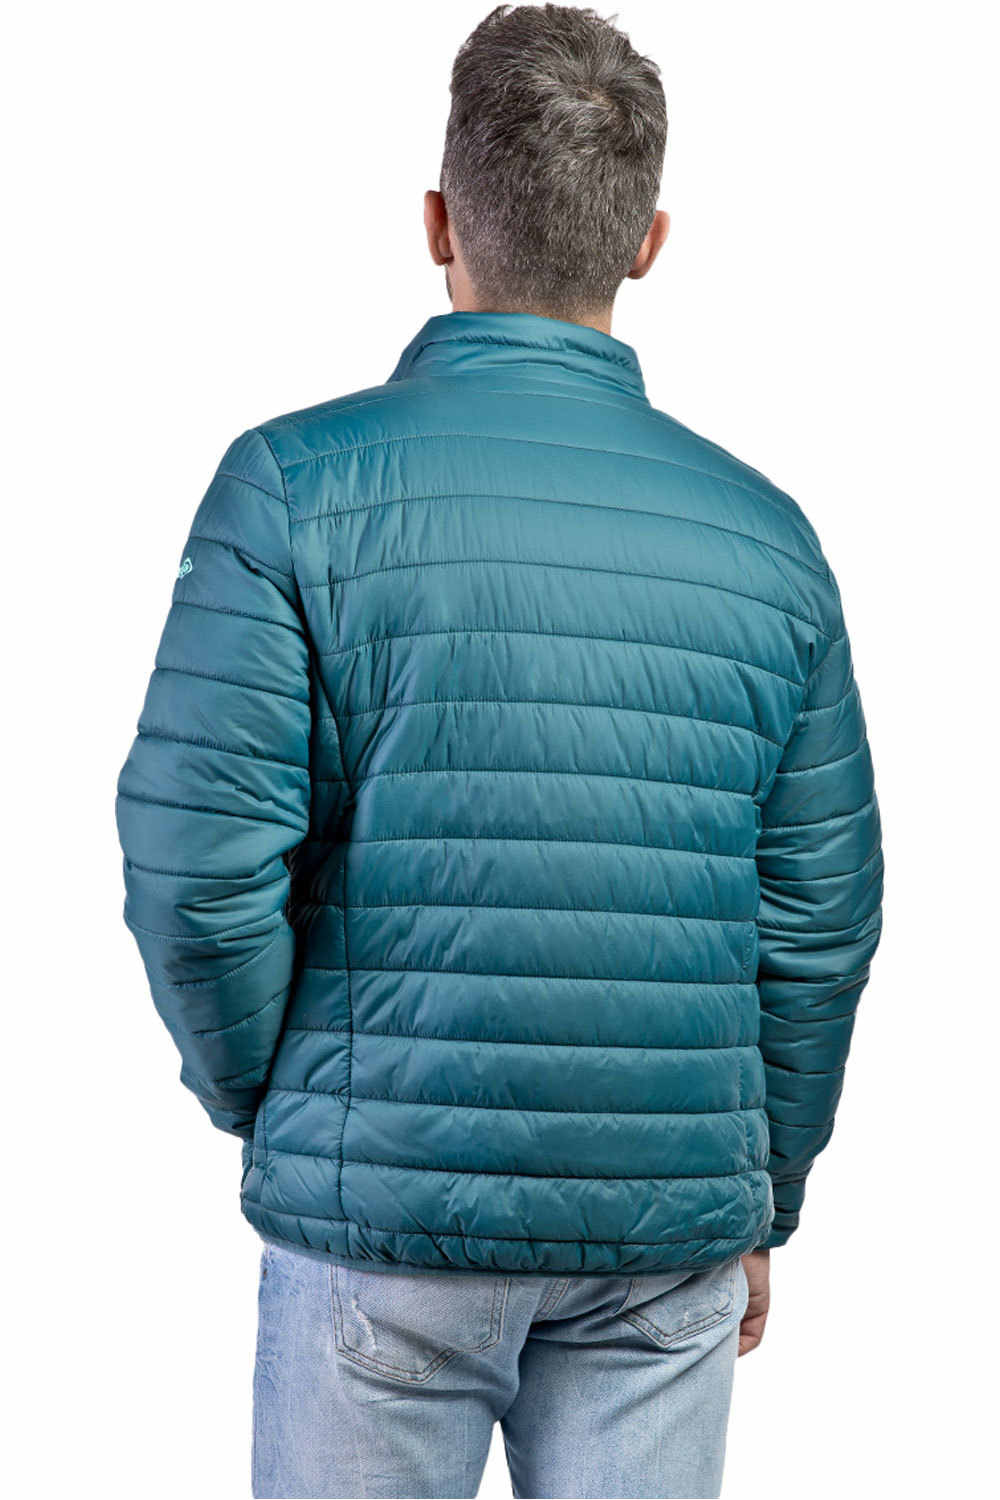 Izas Logan azul chaqueta outdoor hombre